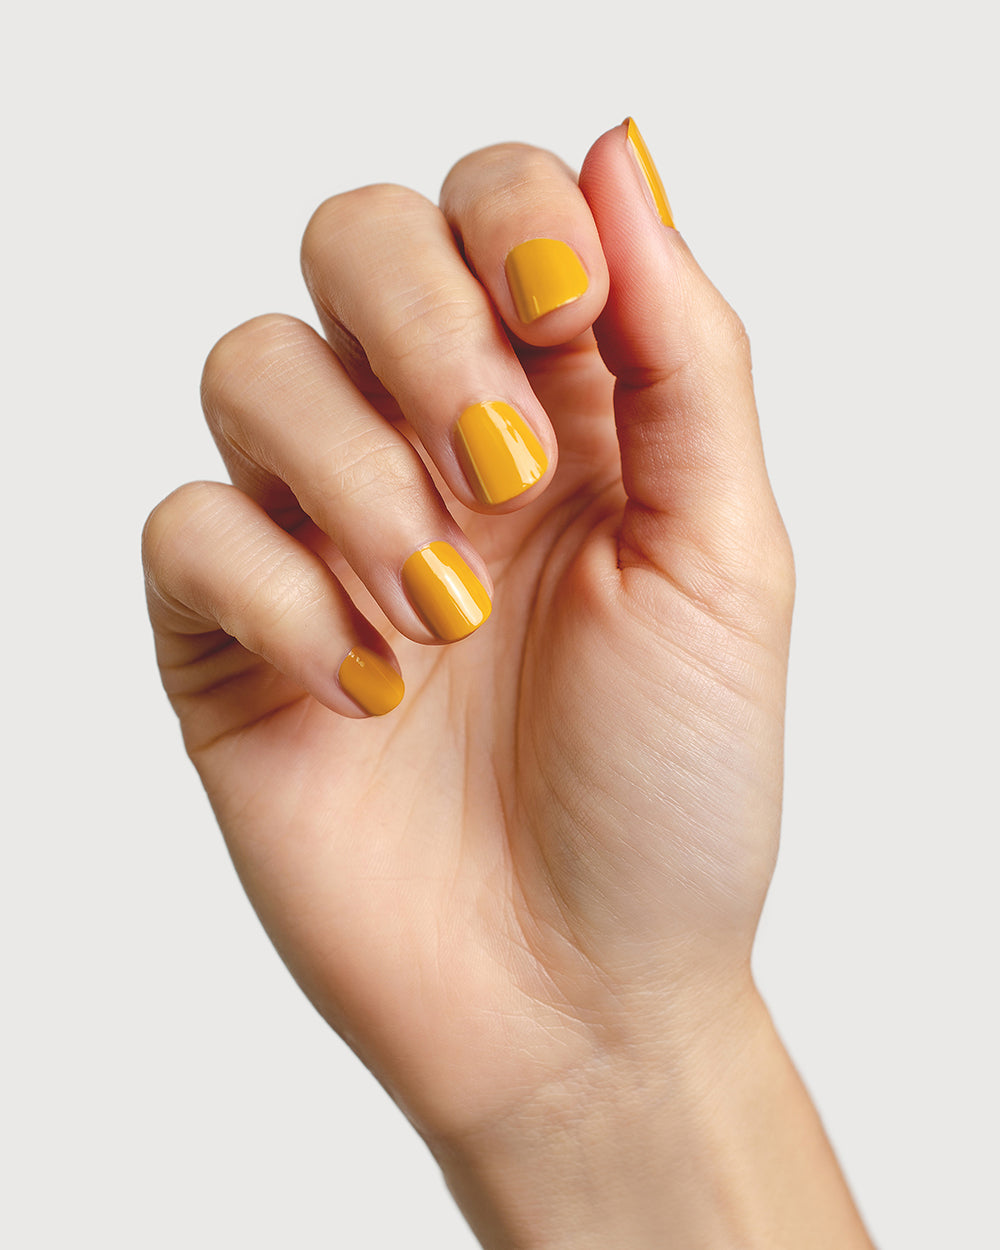 Tuscan sun yellow nail polish hand swatch on fair skin tone